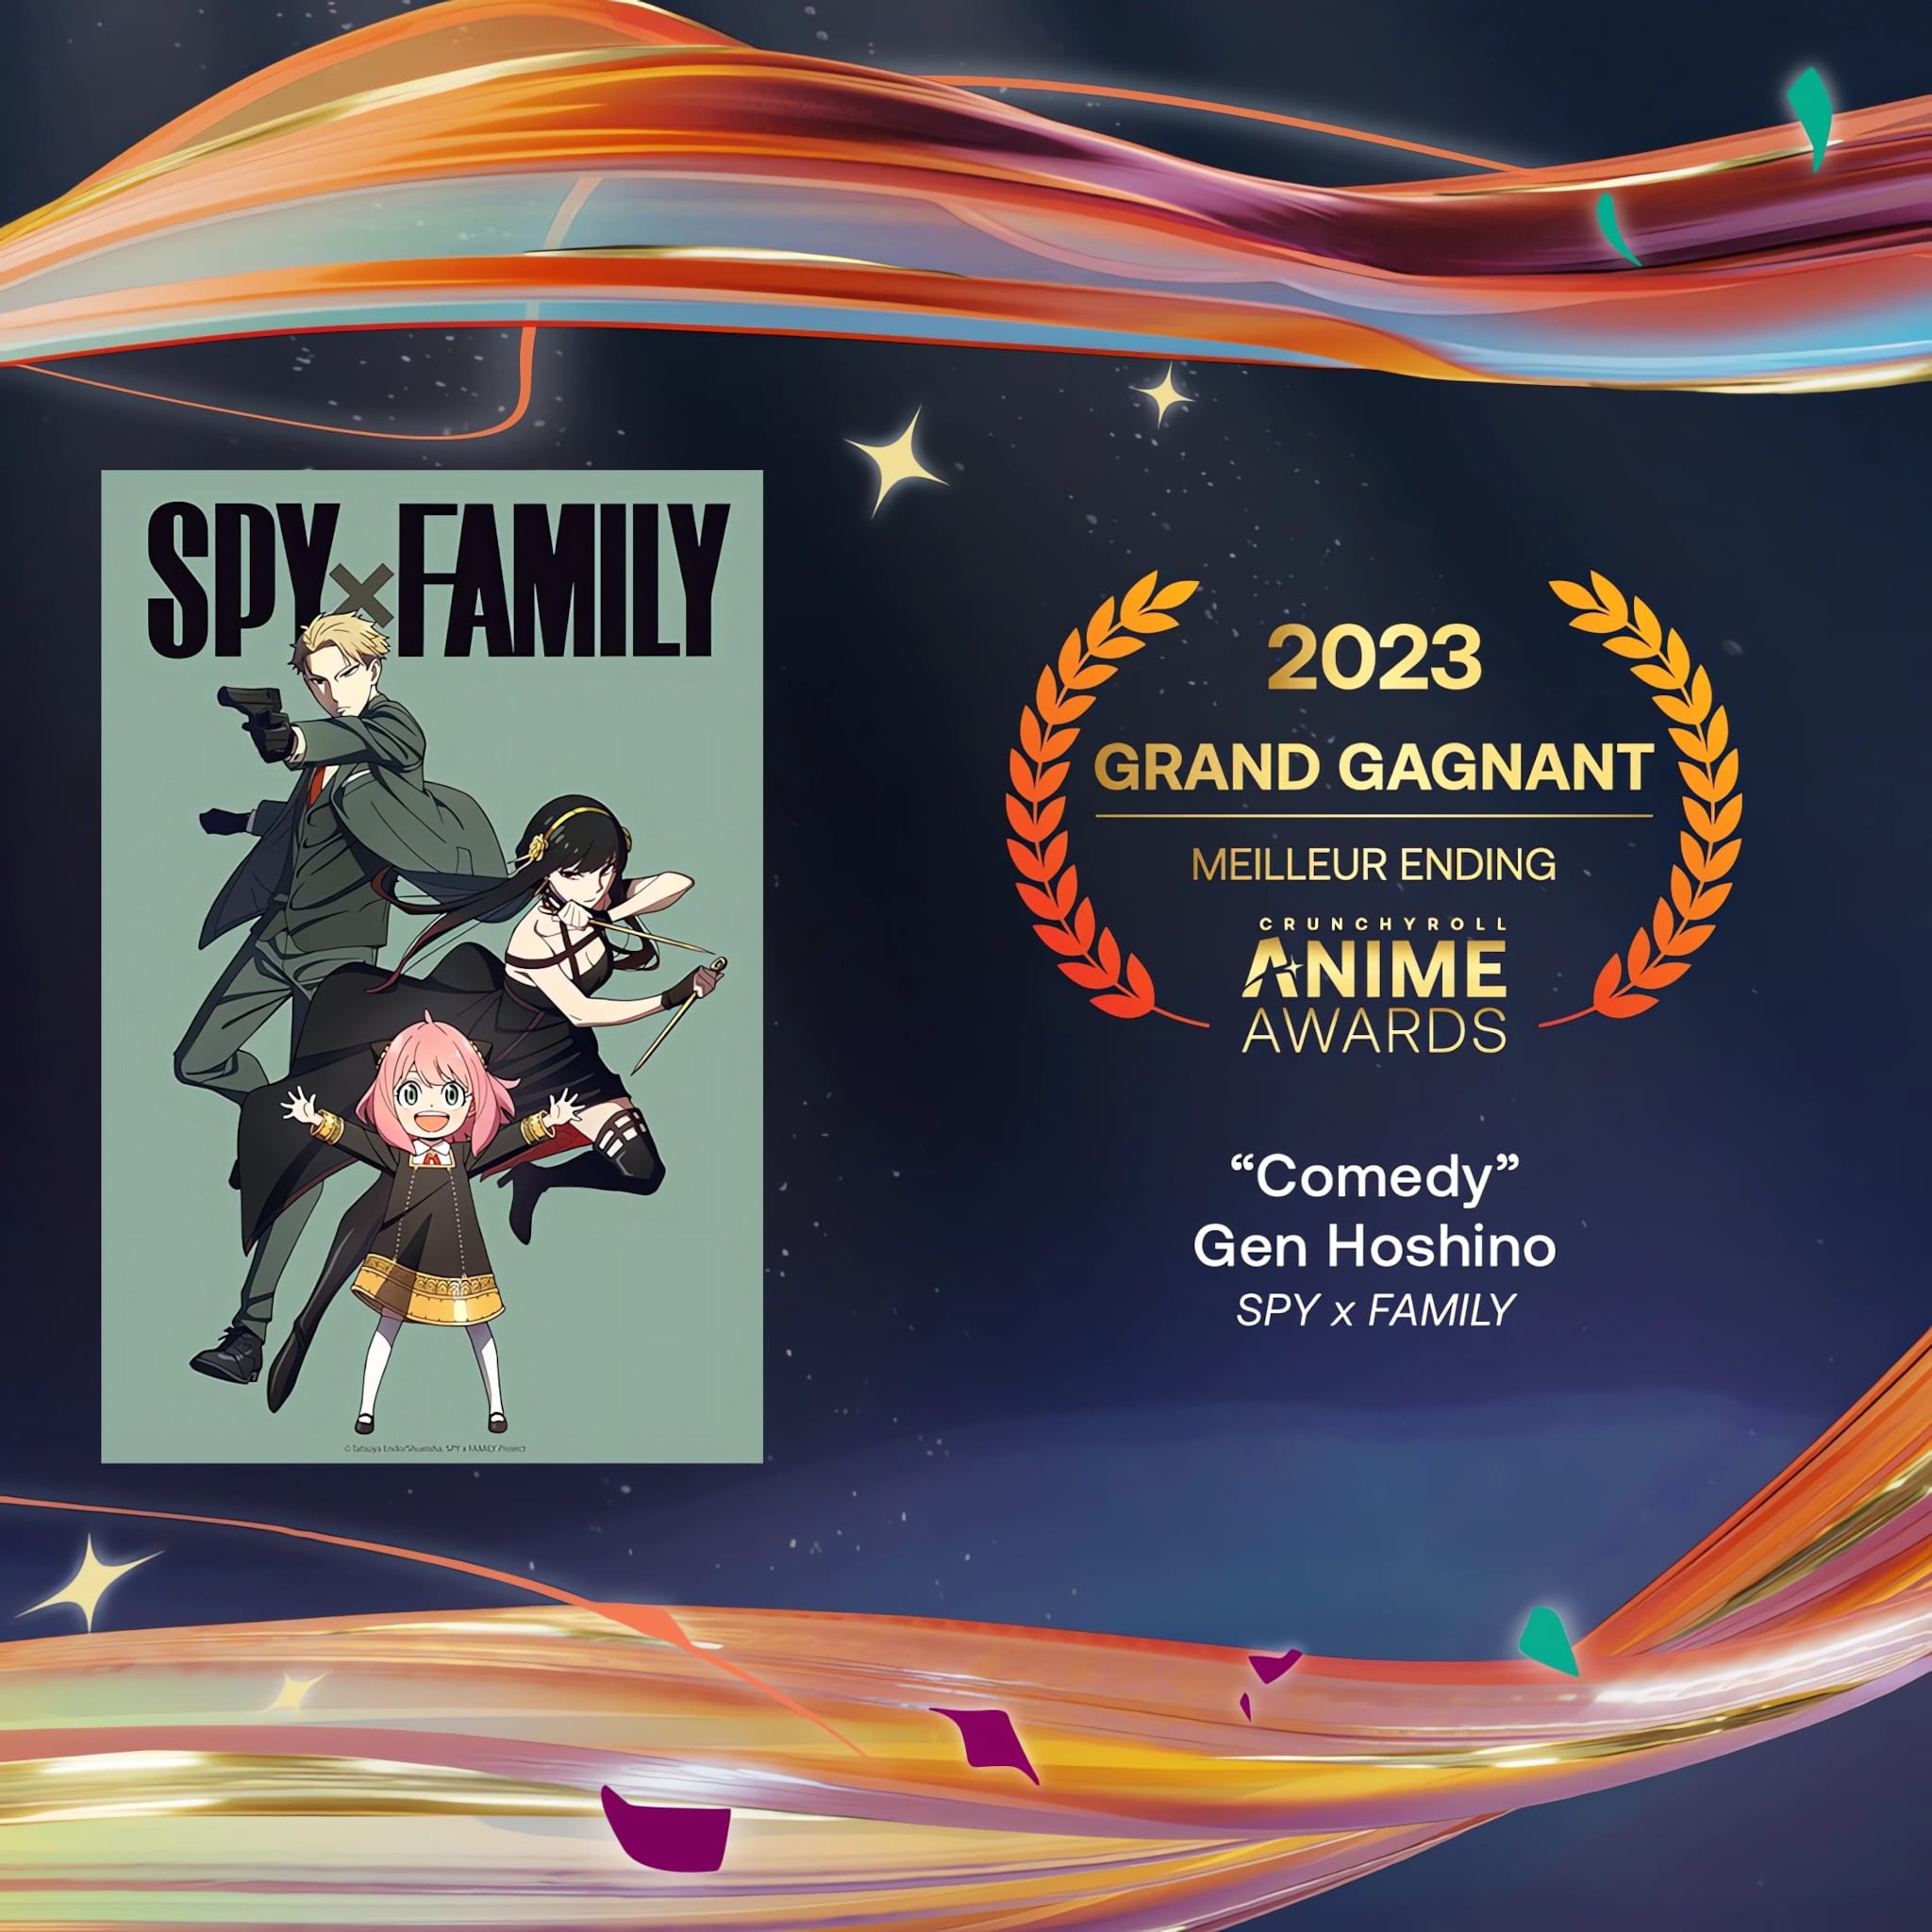 Prix du meilleur ending pour les Crunchyroll Anime Awards 2023